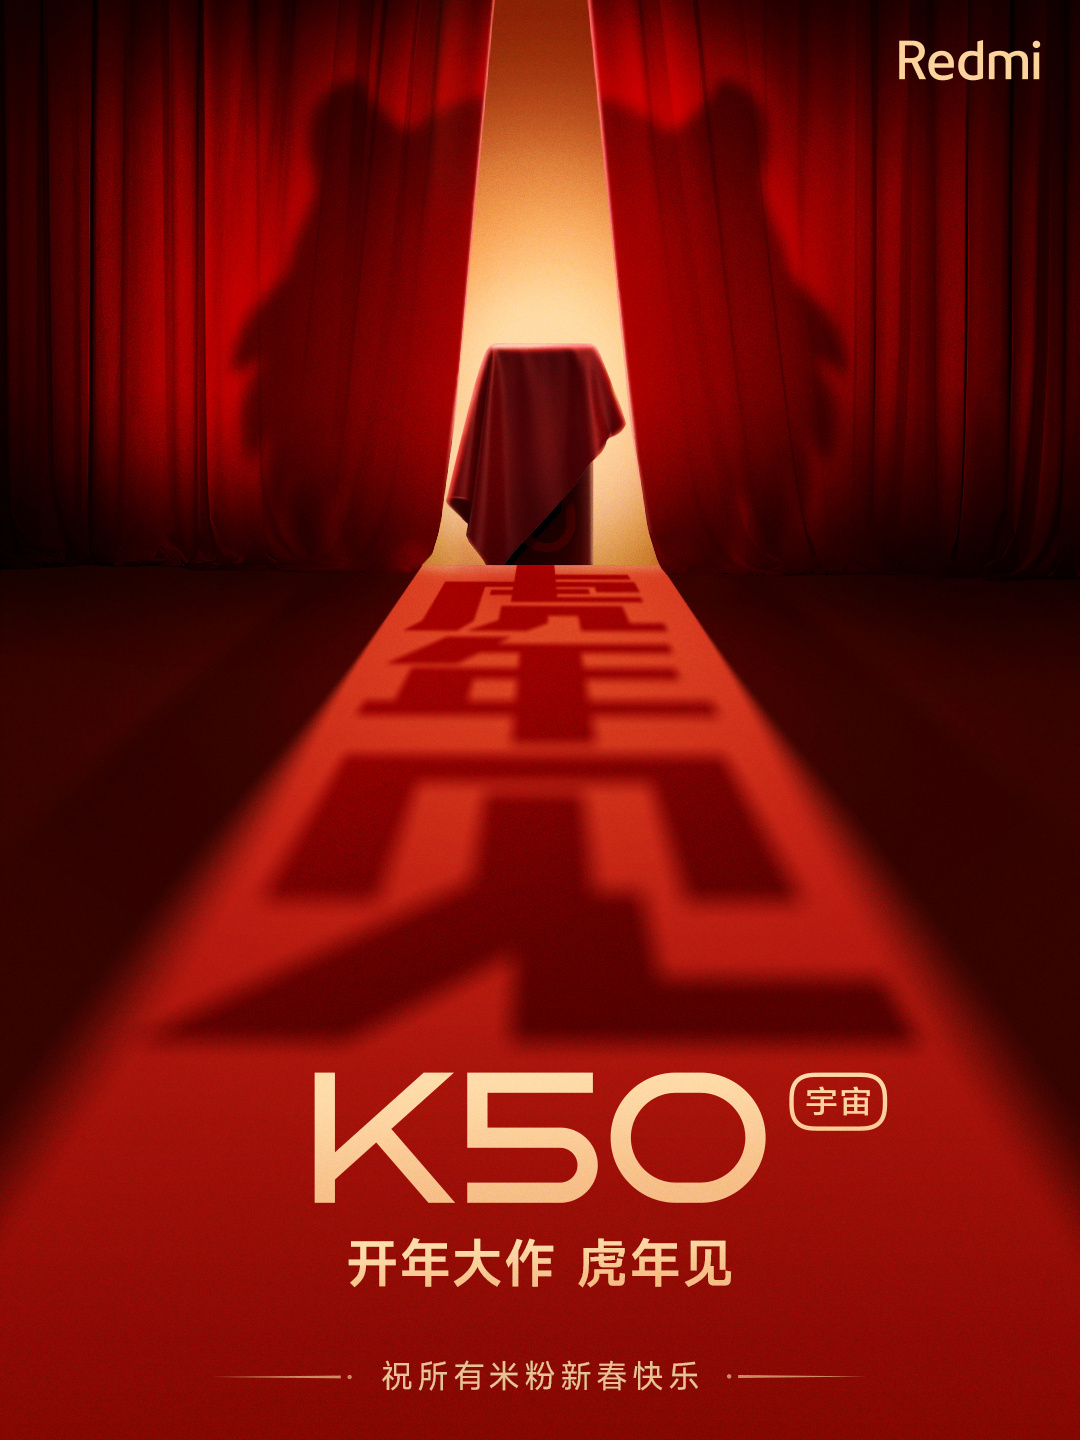 Redmi K50 Super Cup Exclusive Edition